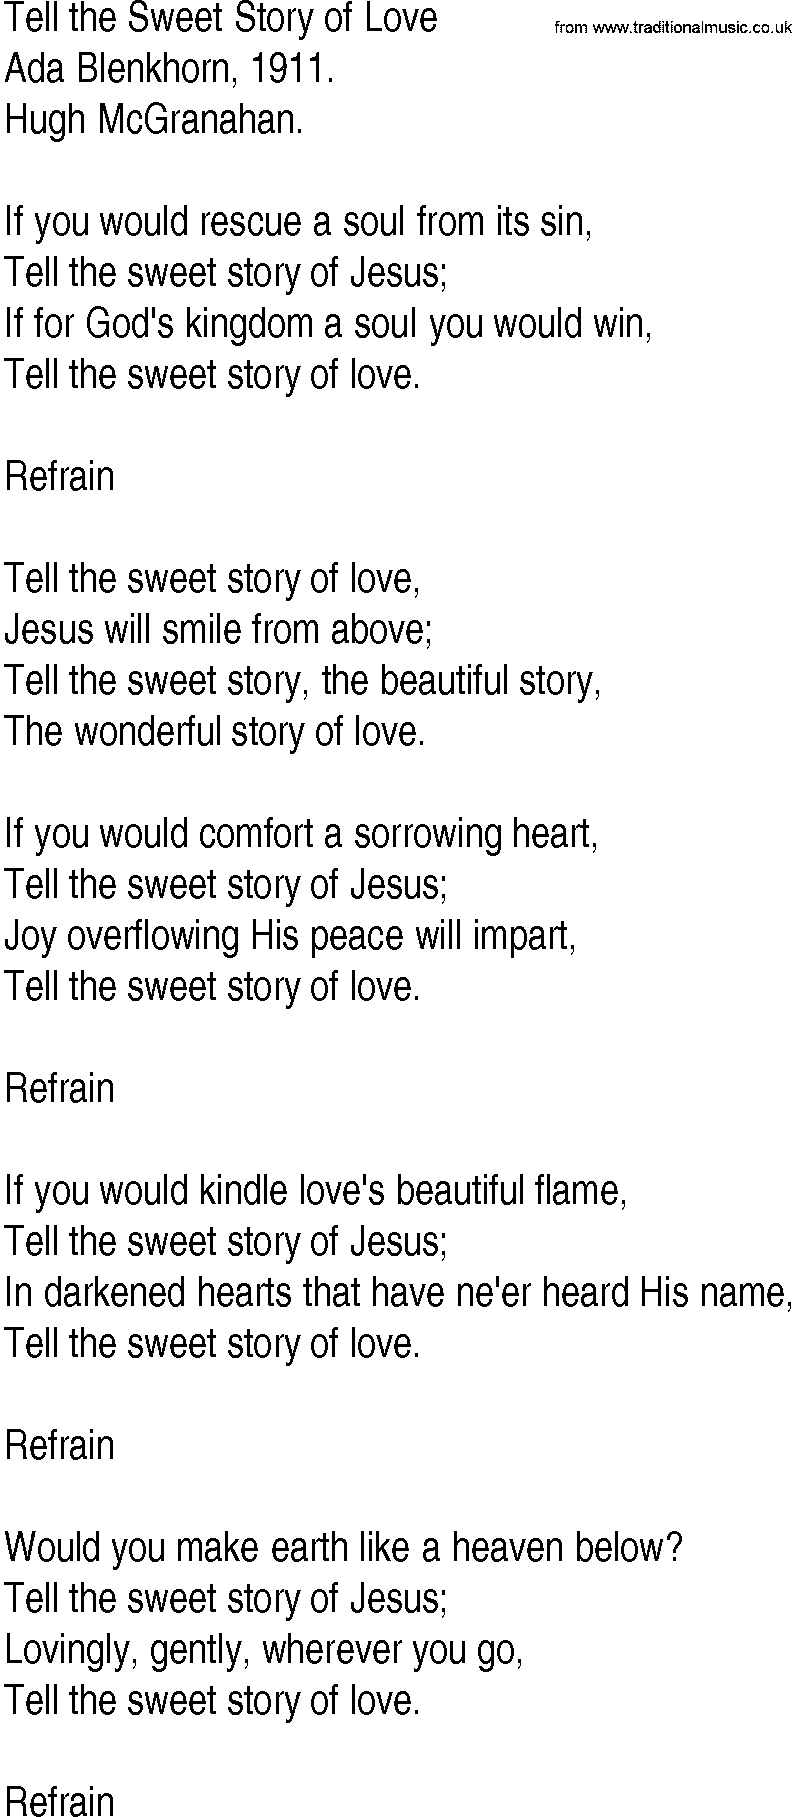 Hymn and Gospel Song: Tell the Sweet Story of Love by Ada Blenkhorn lyrics